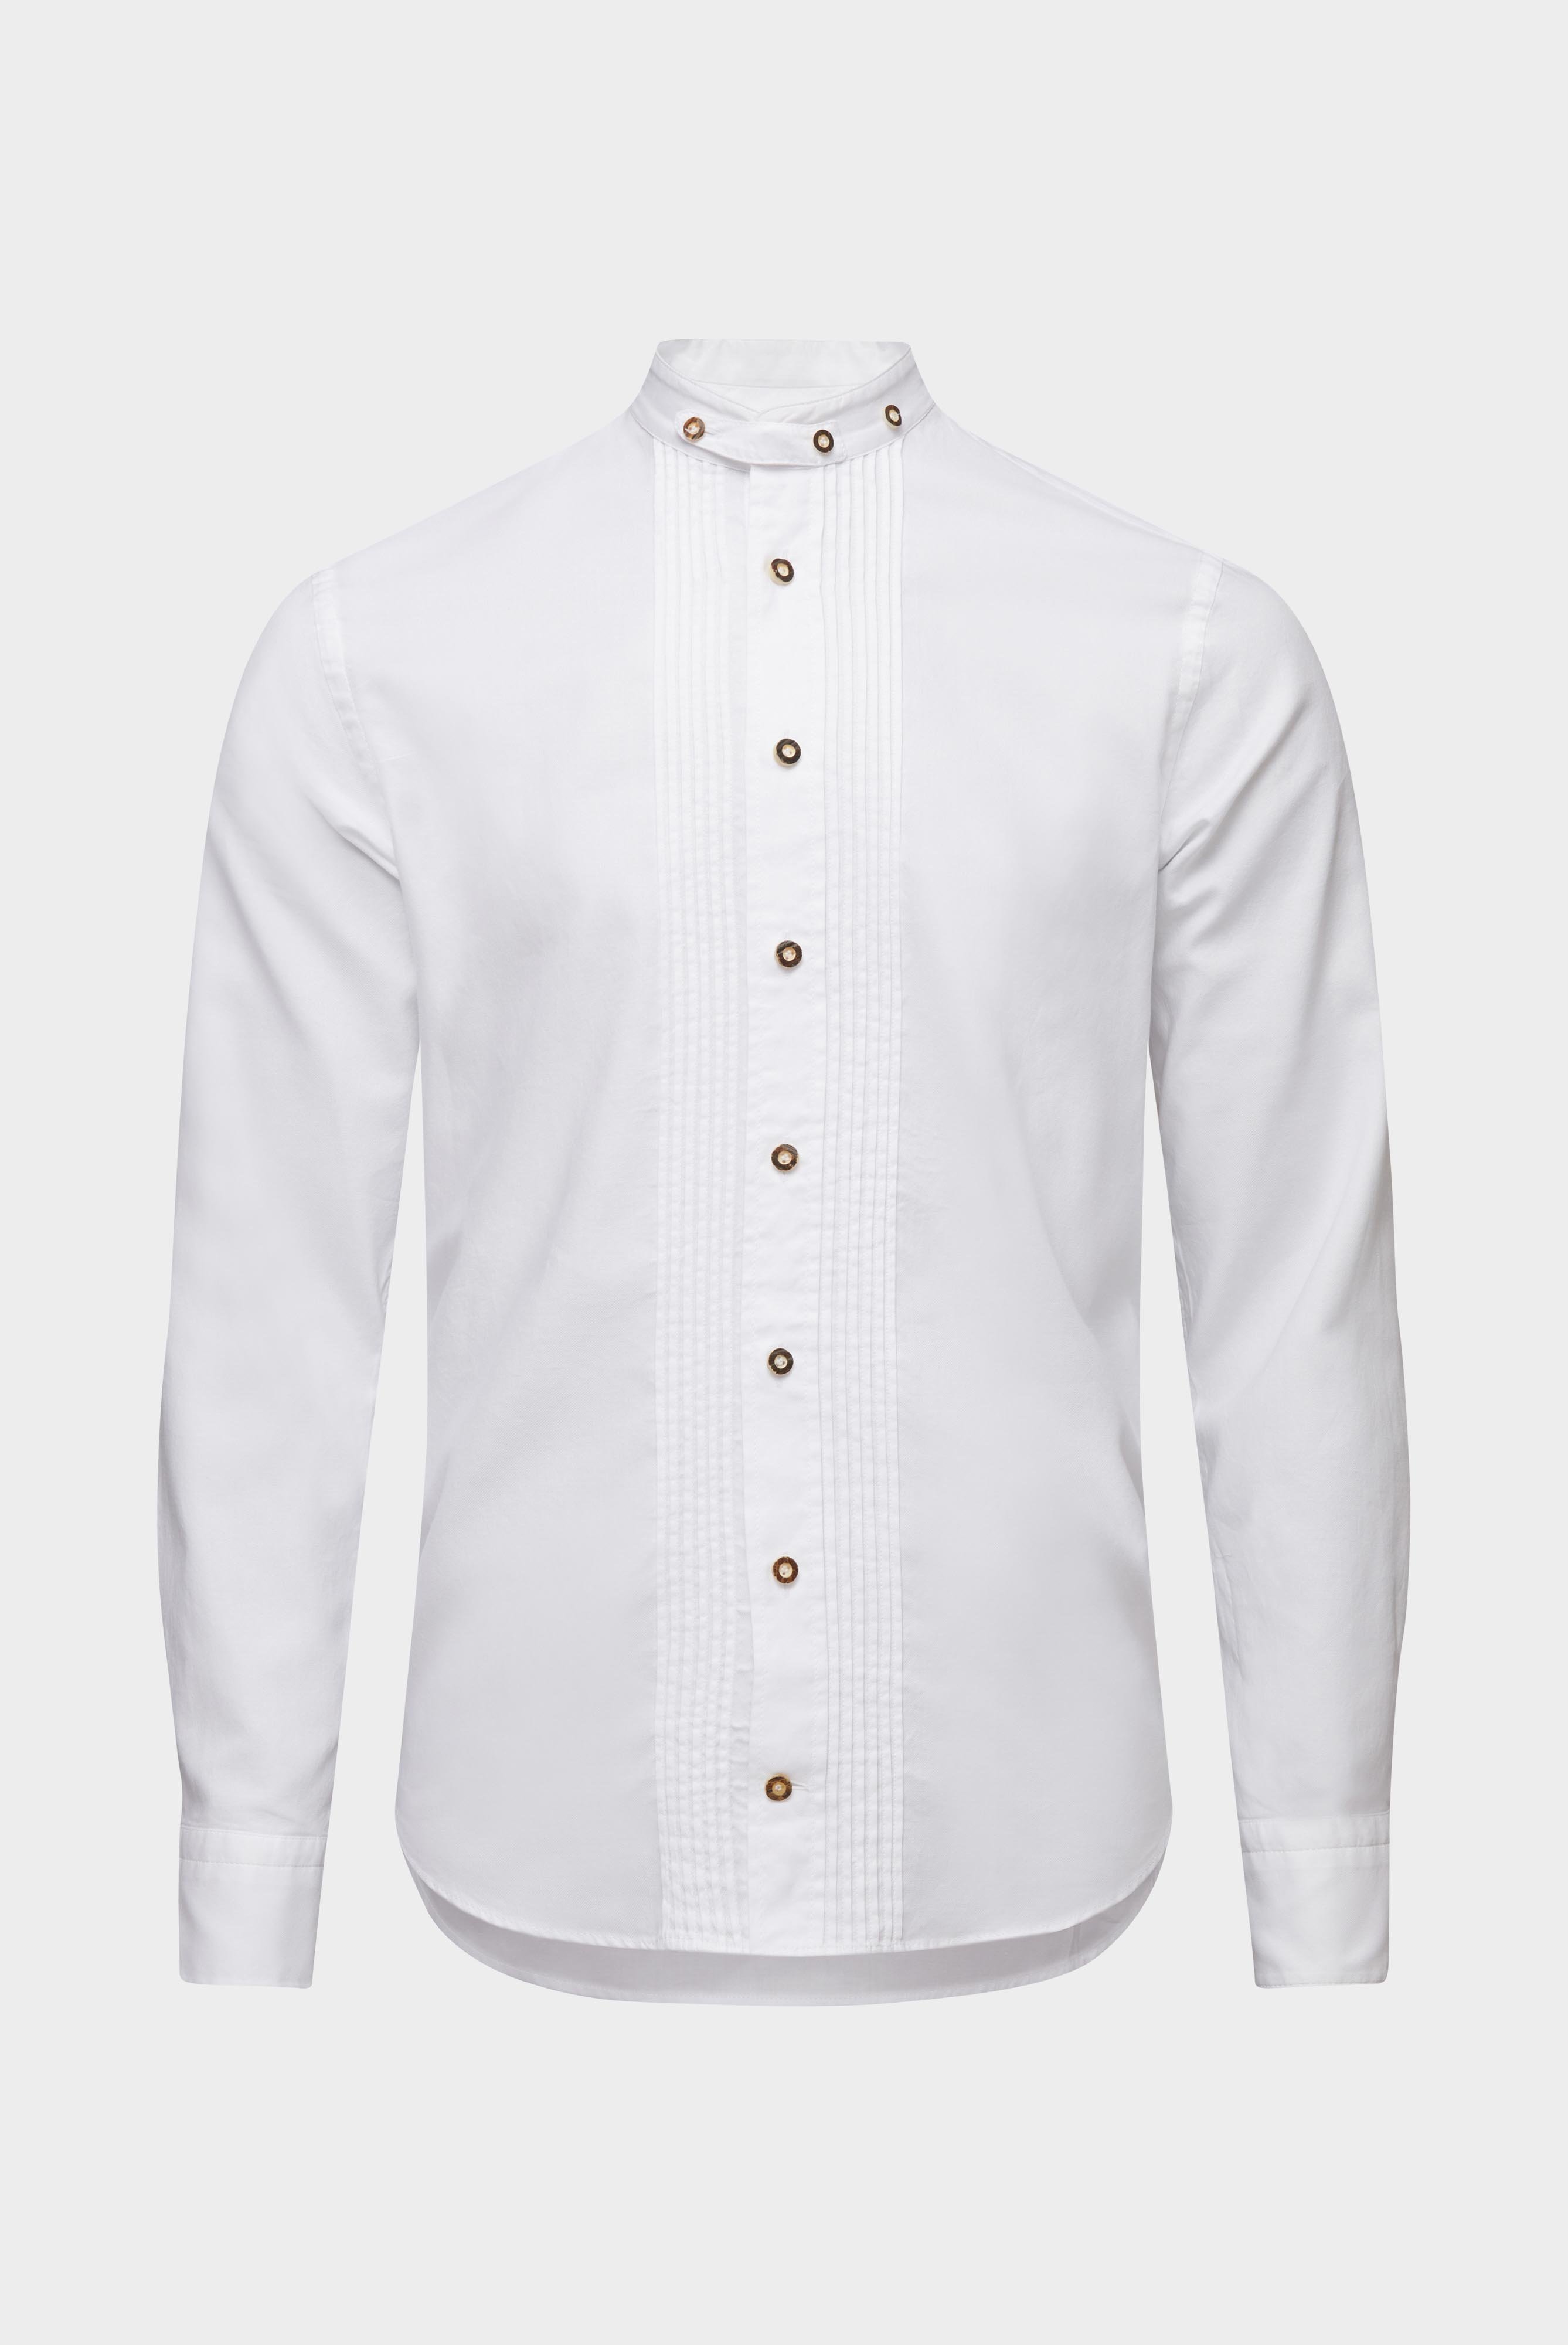 Festliche Hemden+Oxford Trachtenhemd mit Plissee-Einsatz Tailor Fit+20.2072.EB.150251.000.38